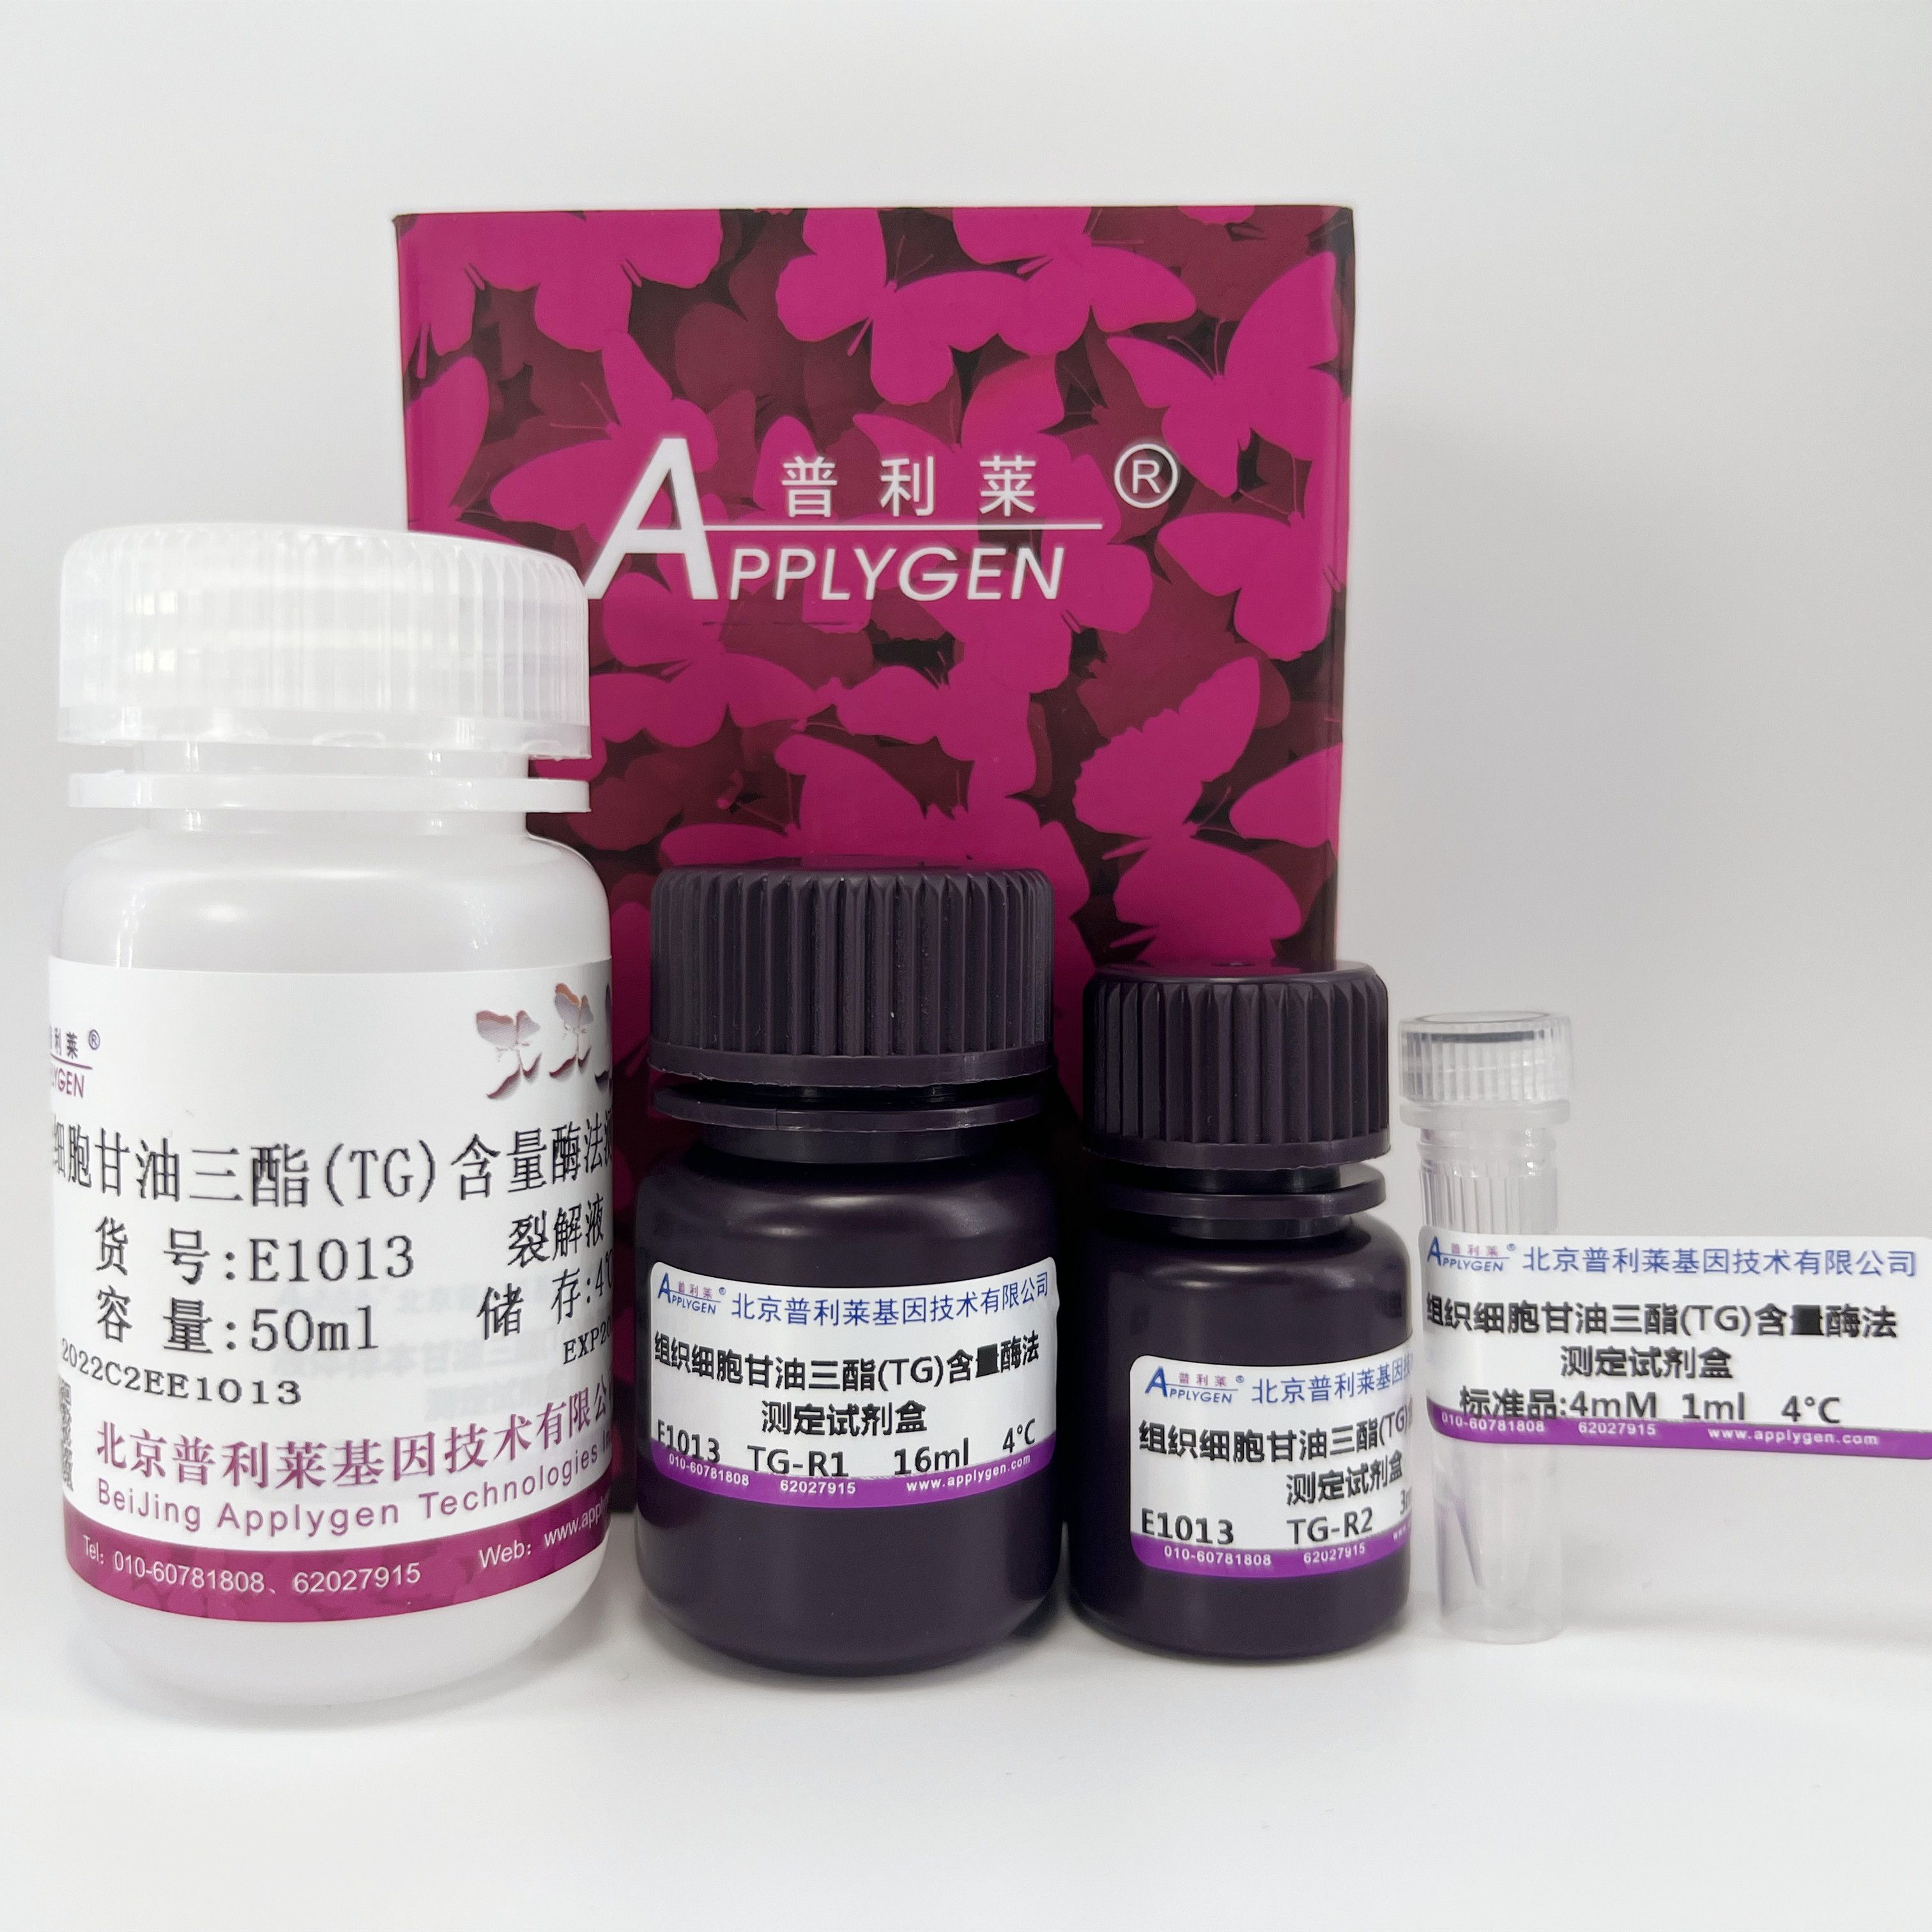 组织细胞甘油三酯（TG）酶法测定试剂盒   E1013   厂家直销，提供OEM定制服务，大包装更优惠 